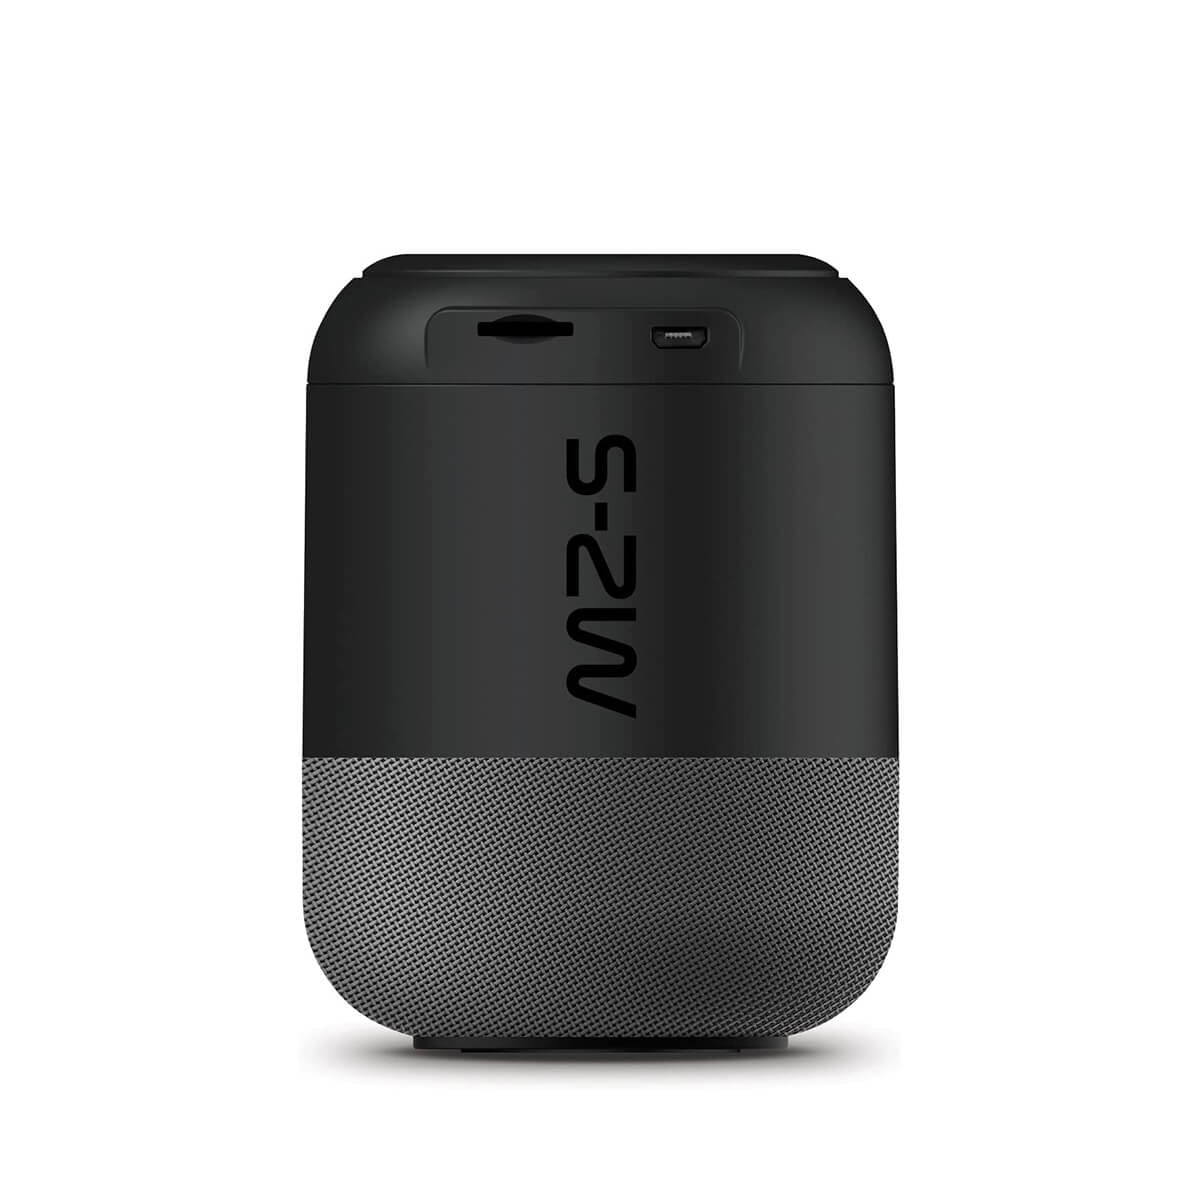 Veho MZ-S Bluetooth speaker Black